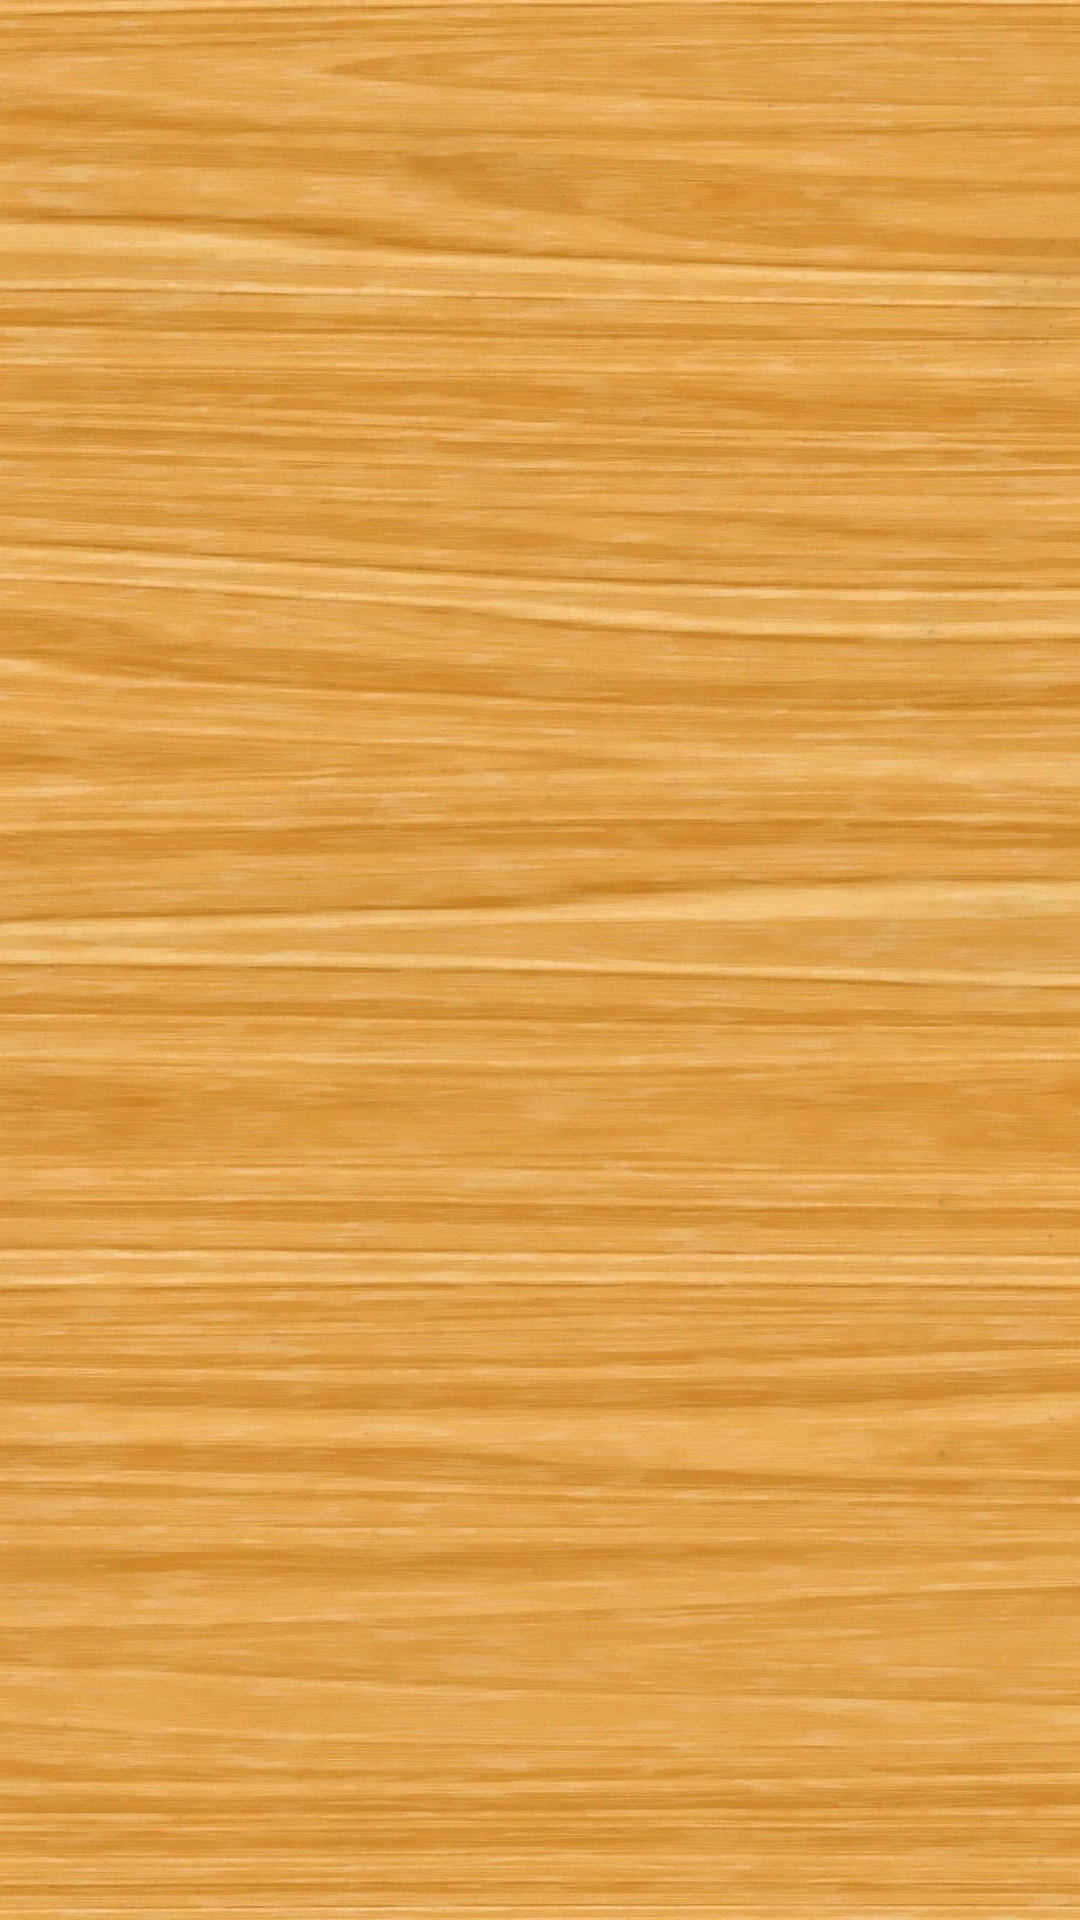 硬木, 地板, 木染色, 胶合板, 木地板 壁纸 1080x1920 允许